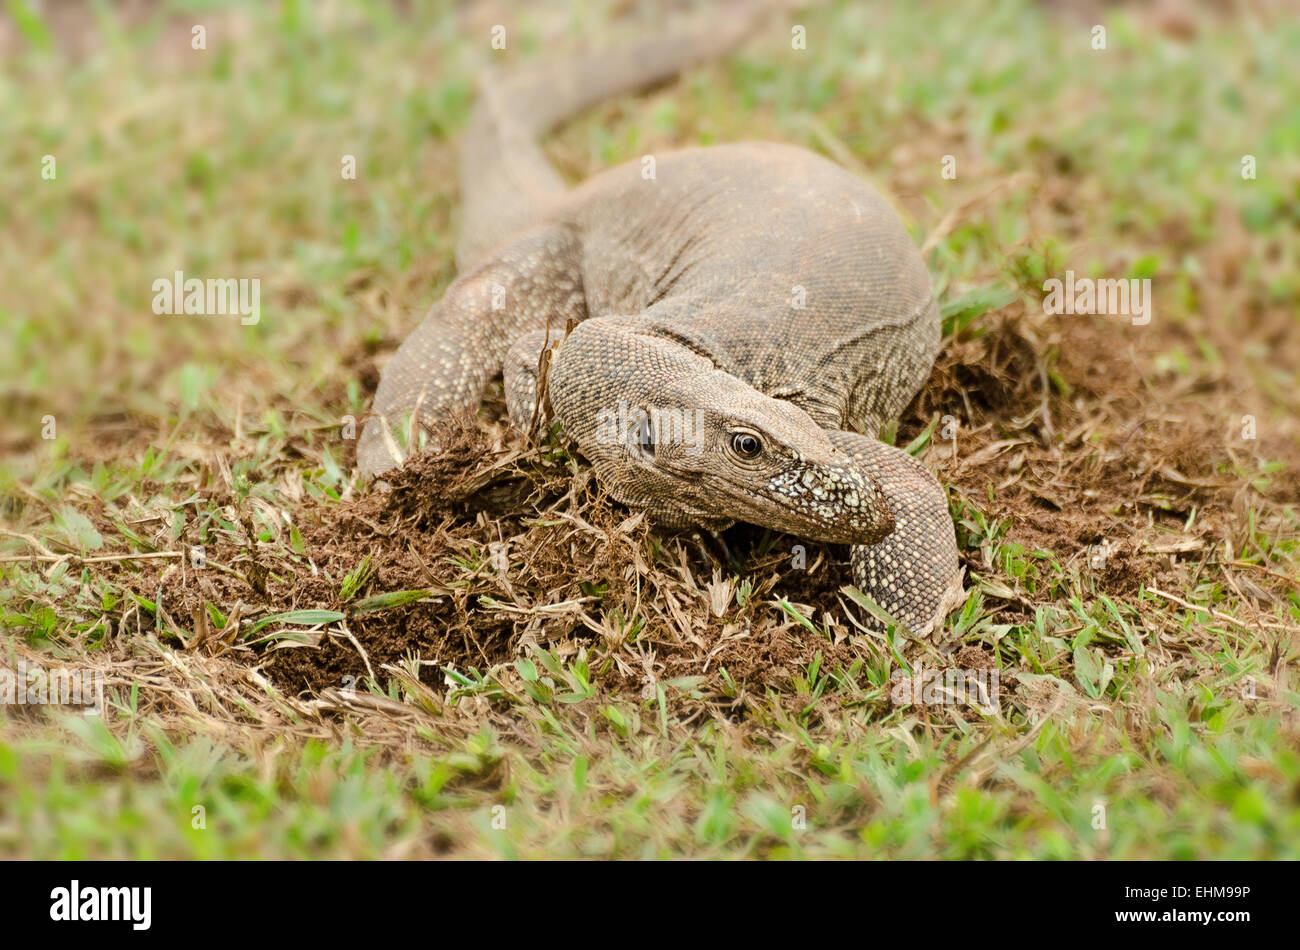 Il Bengala monitor (Varanus bengalensis) o comuni monitor indiano, è un monitor lizard Foto Stock